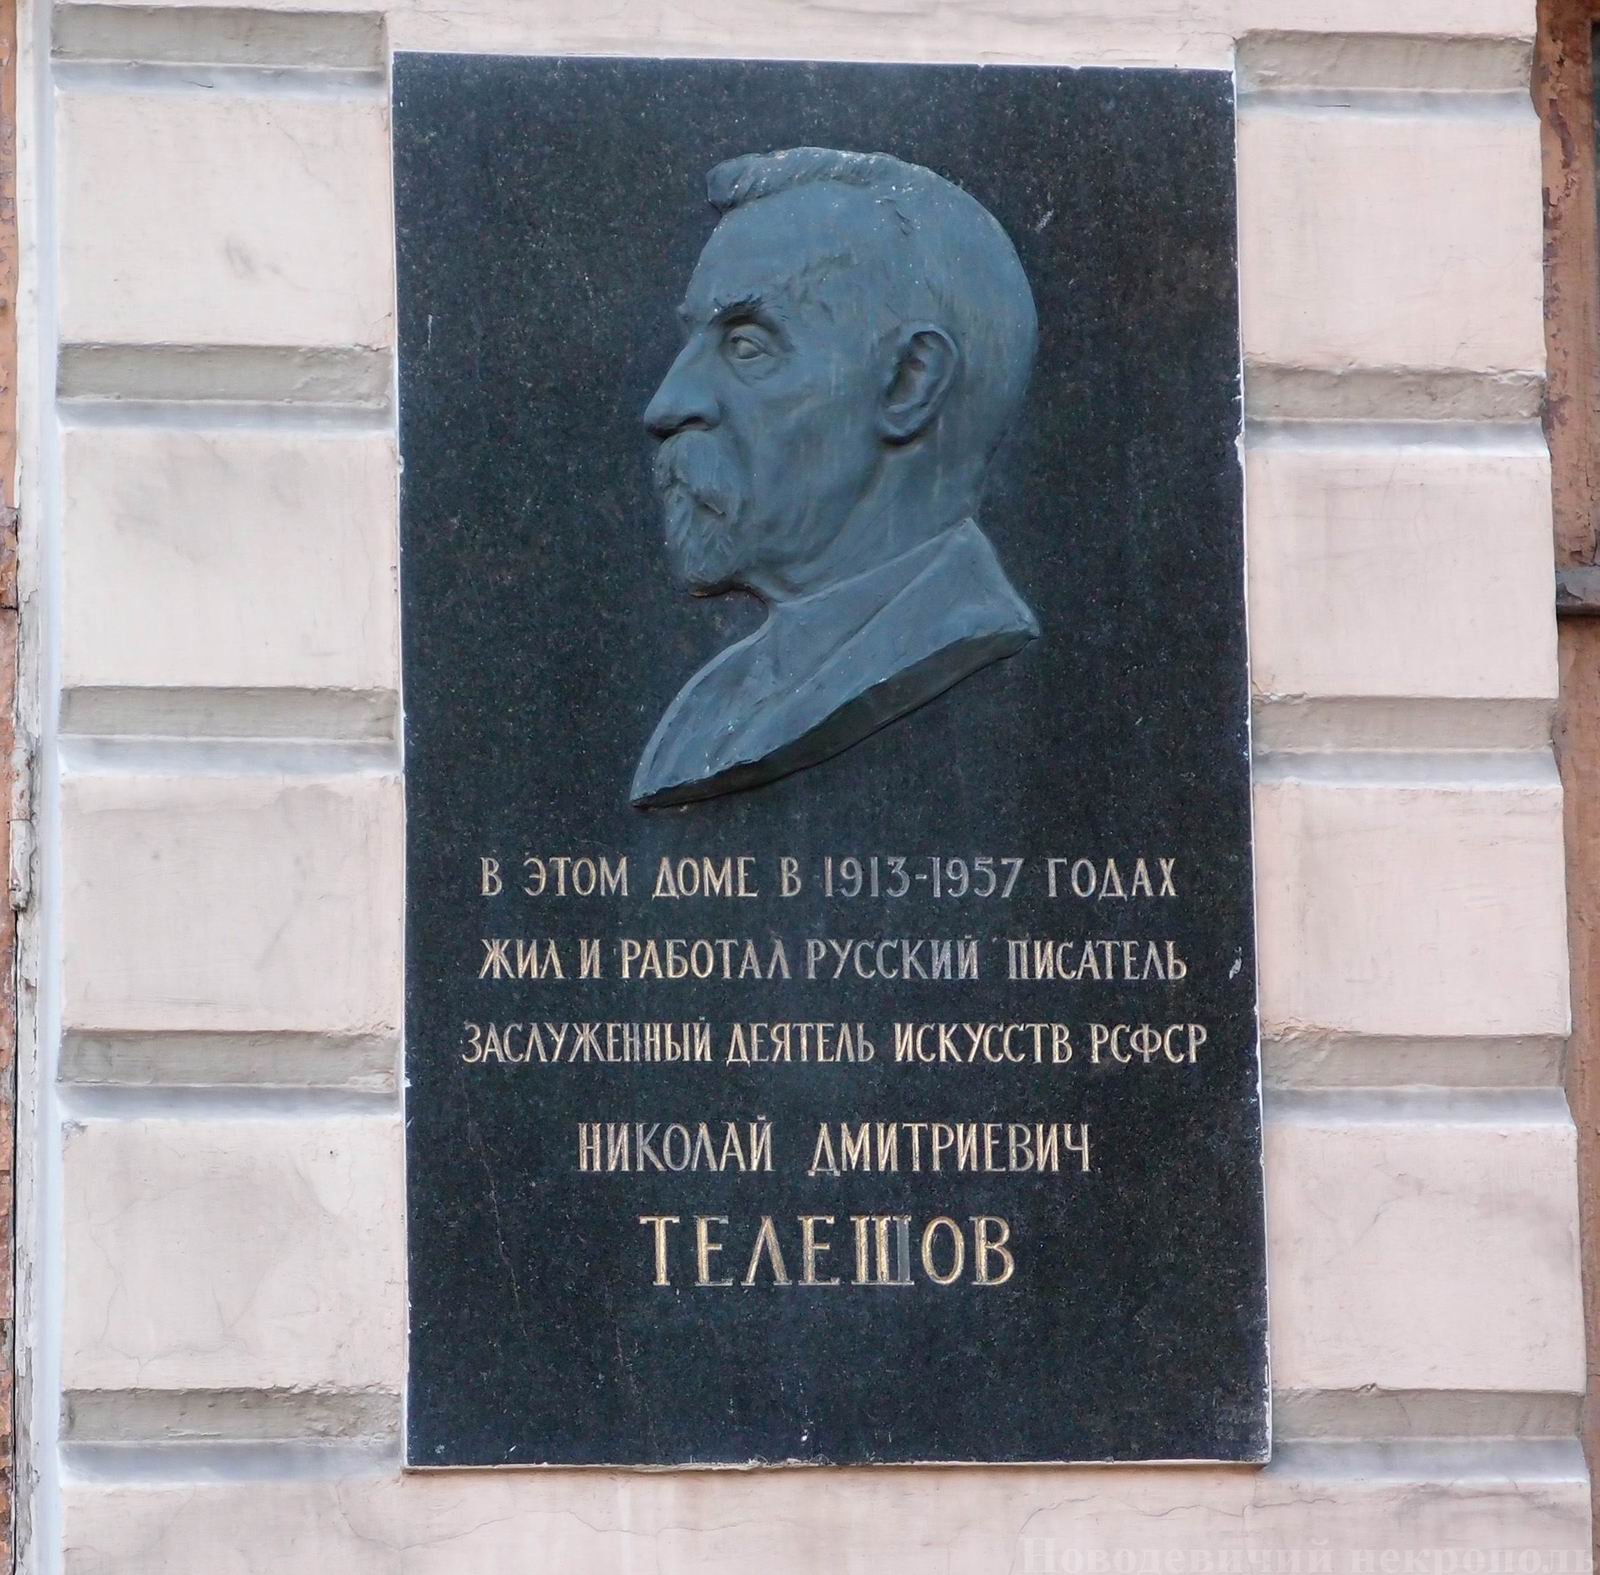 Мемориальная доска Телешову Н.Д. (1867–1957), ск. Н.И.Нисс-Гольдман, на Покровском бульваре, дом 18.